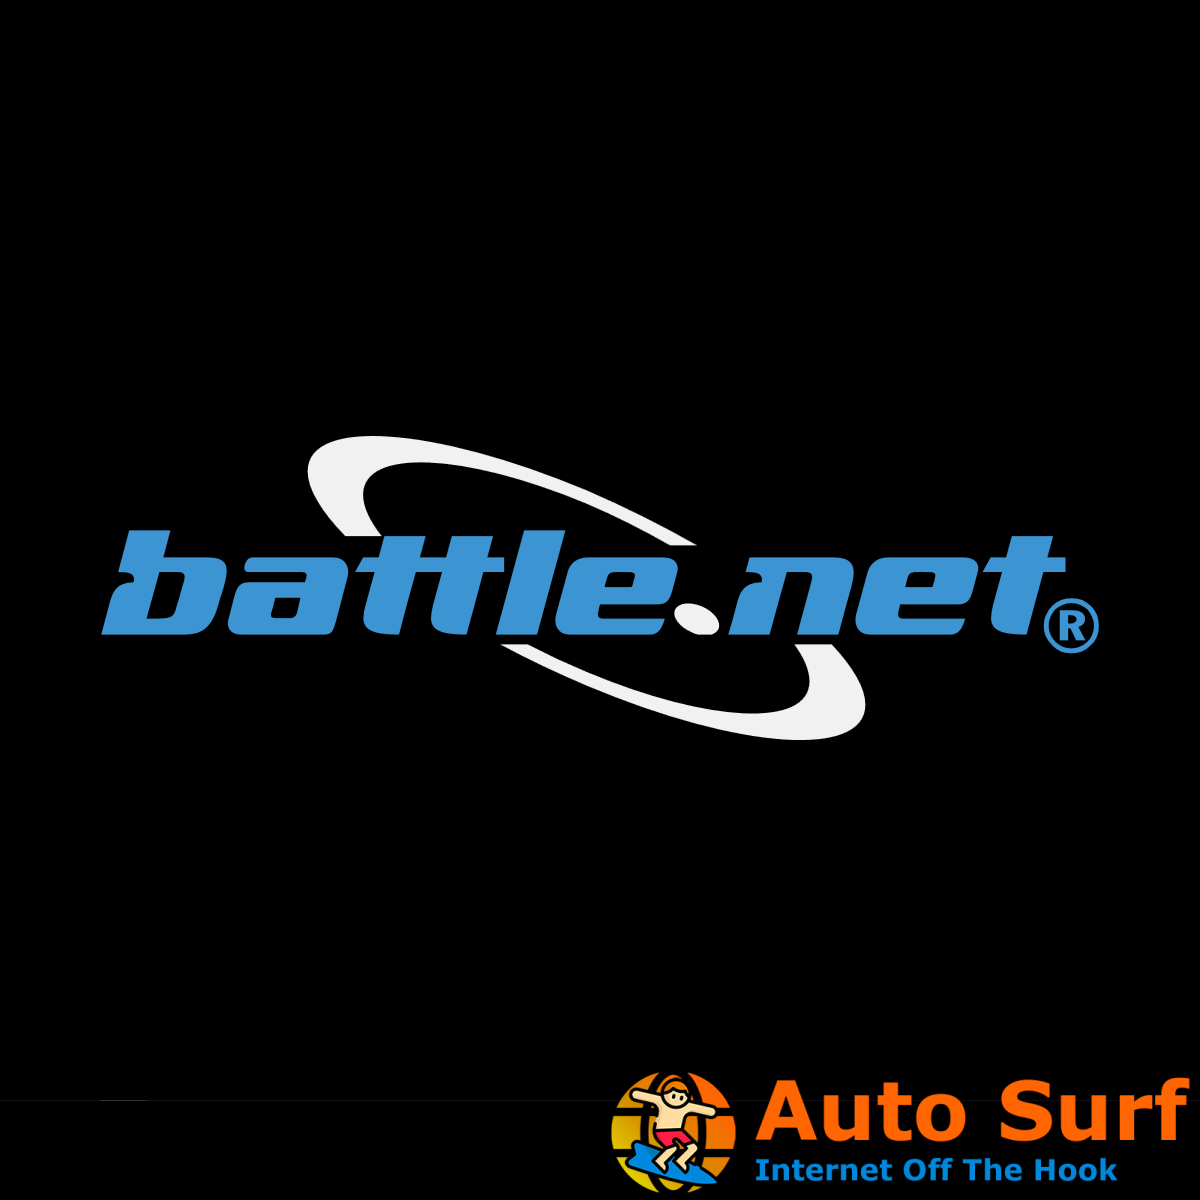 ¿No puedes agregar amigos en los juegos de Battle.net? Solucionar este problema ahora